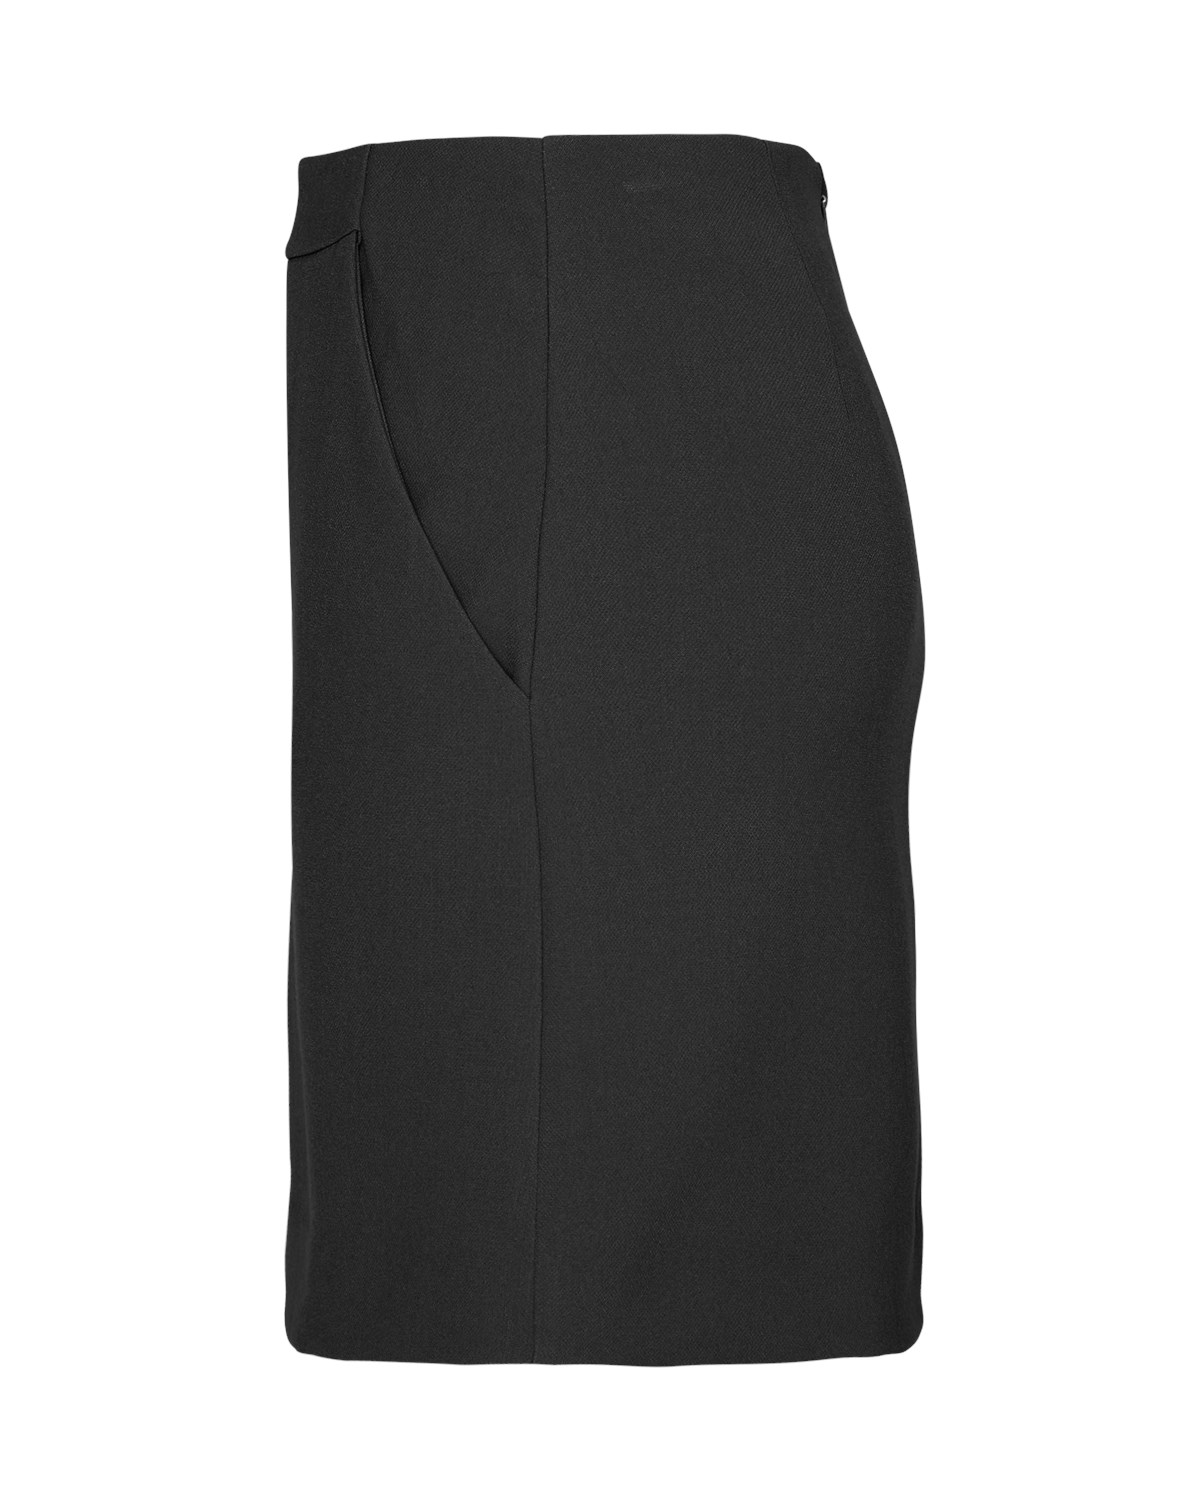 Thalea Black HW Skirt item side